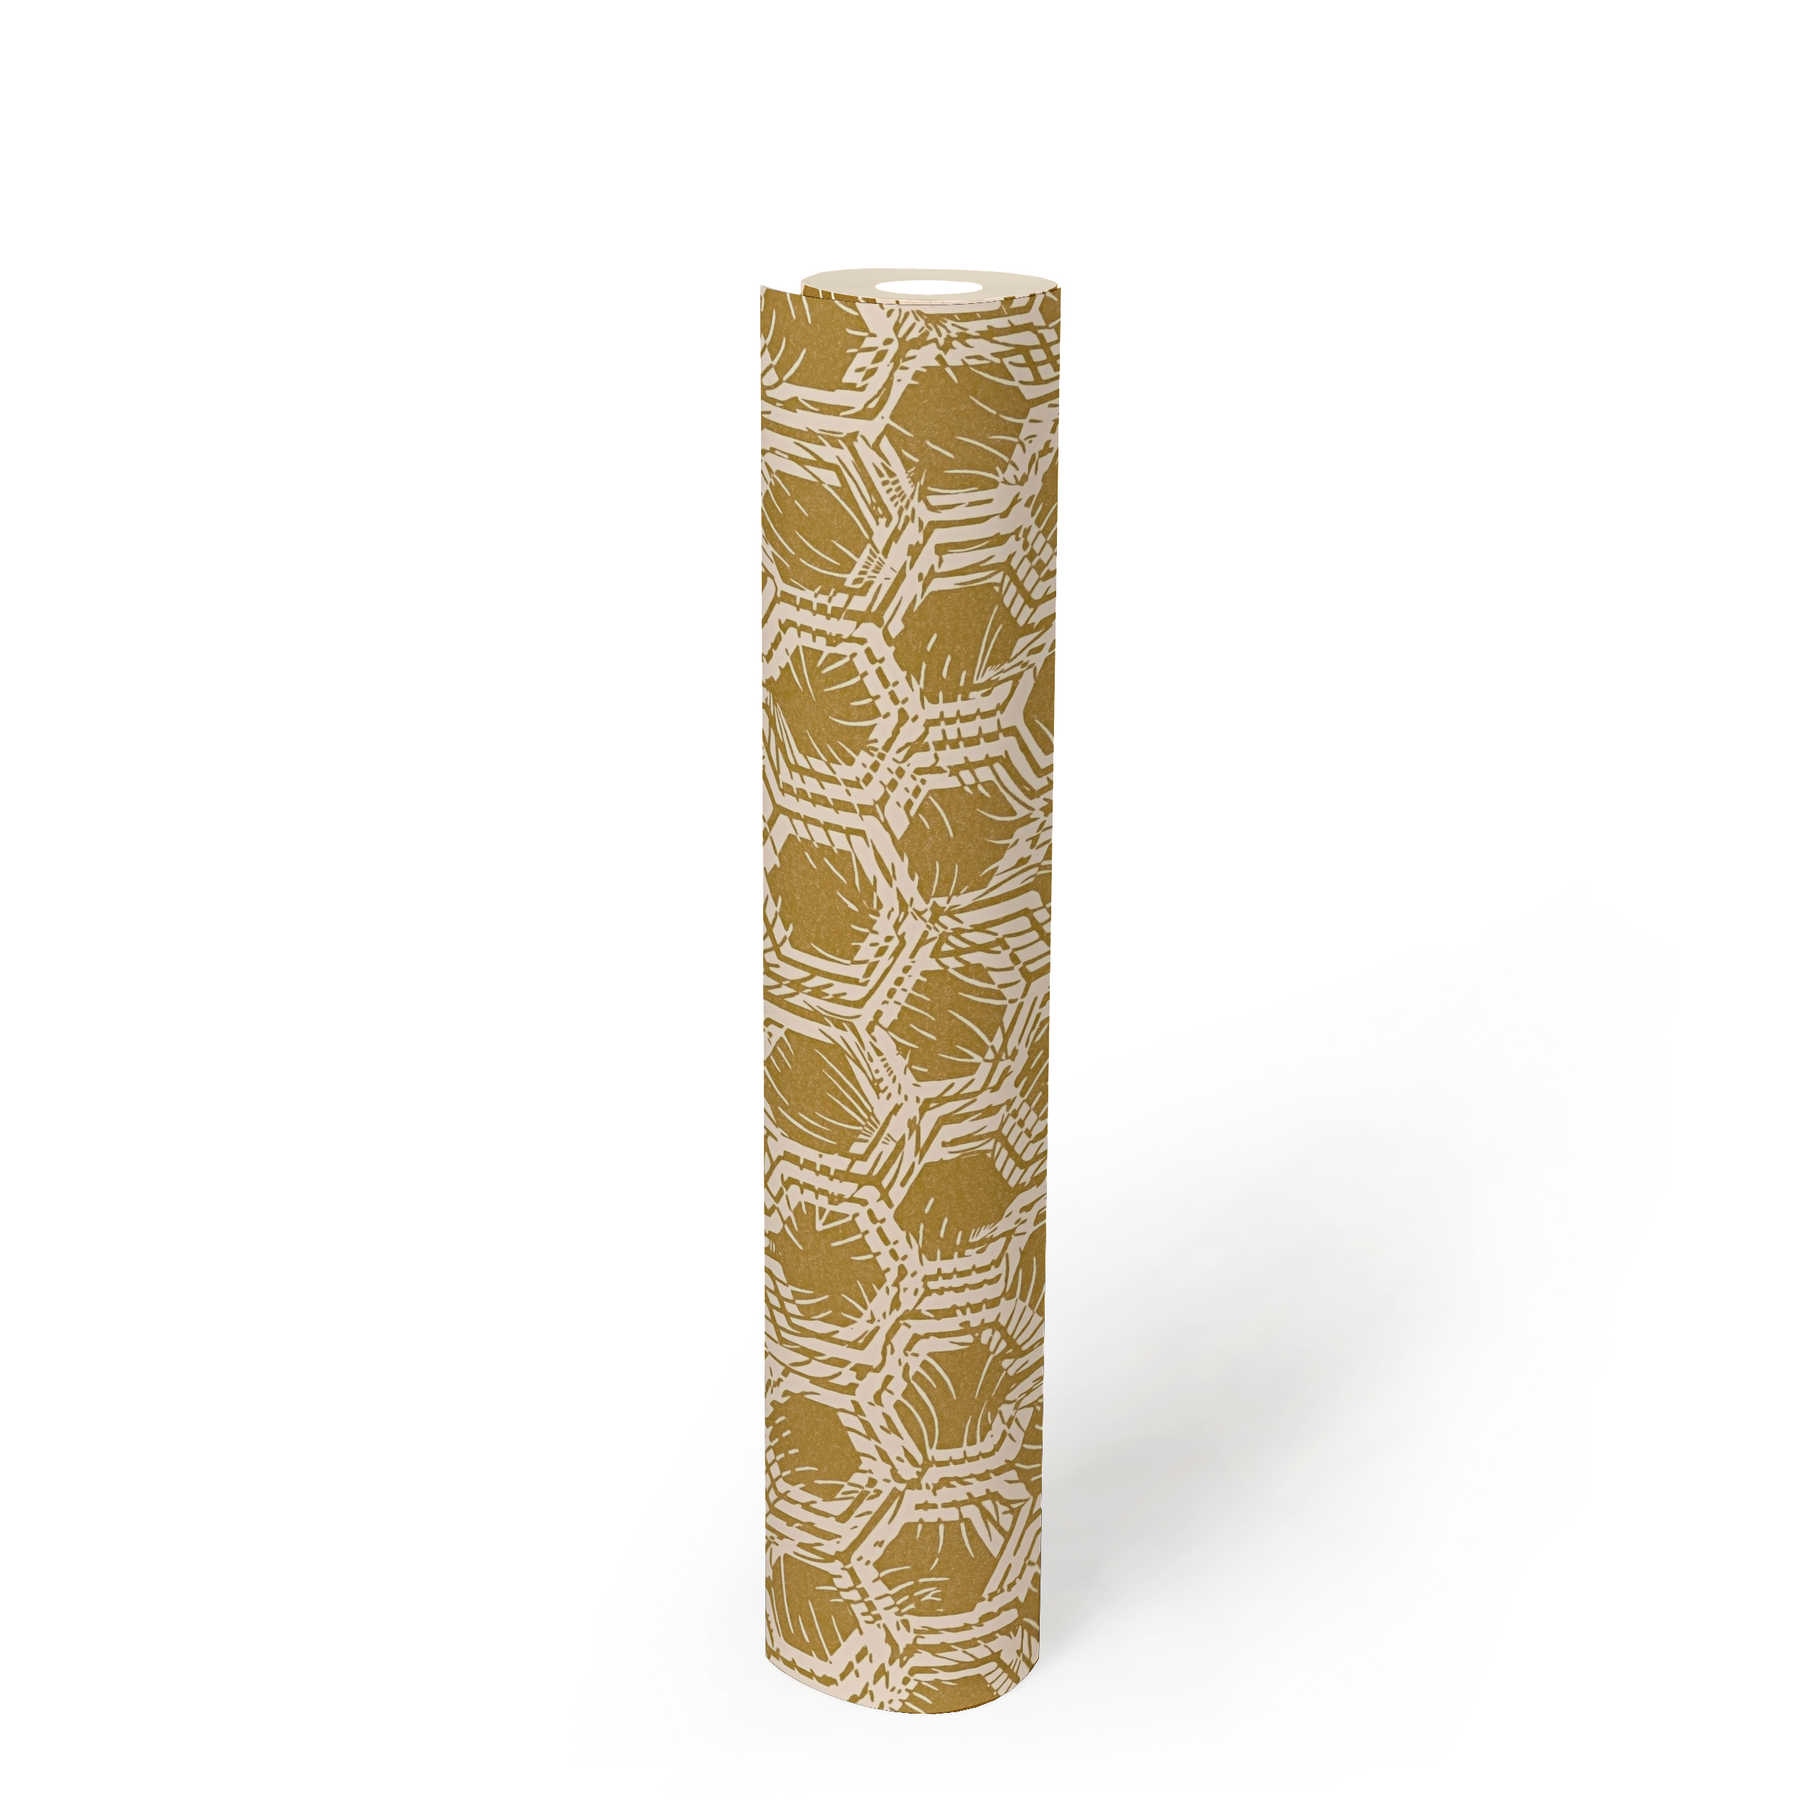             Metallic Tapete mit geometrischen Muster – Gold, Beige
        